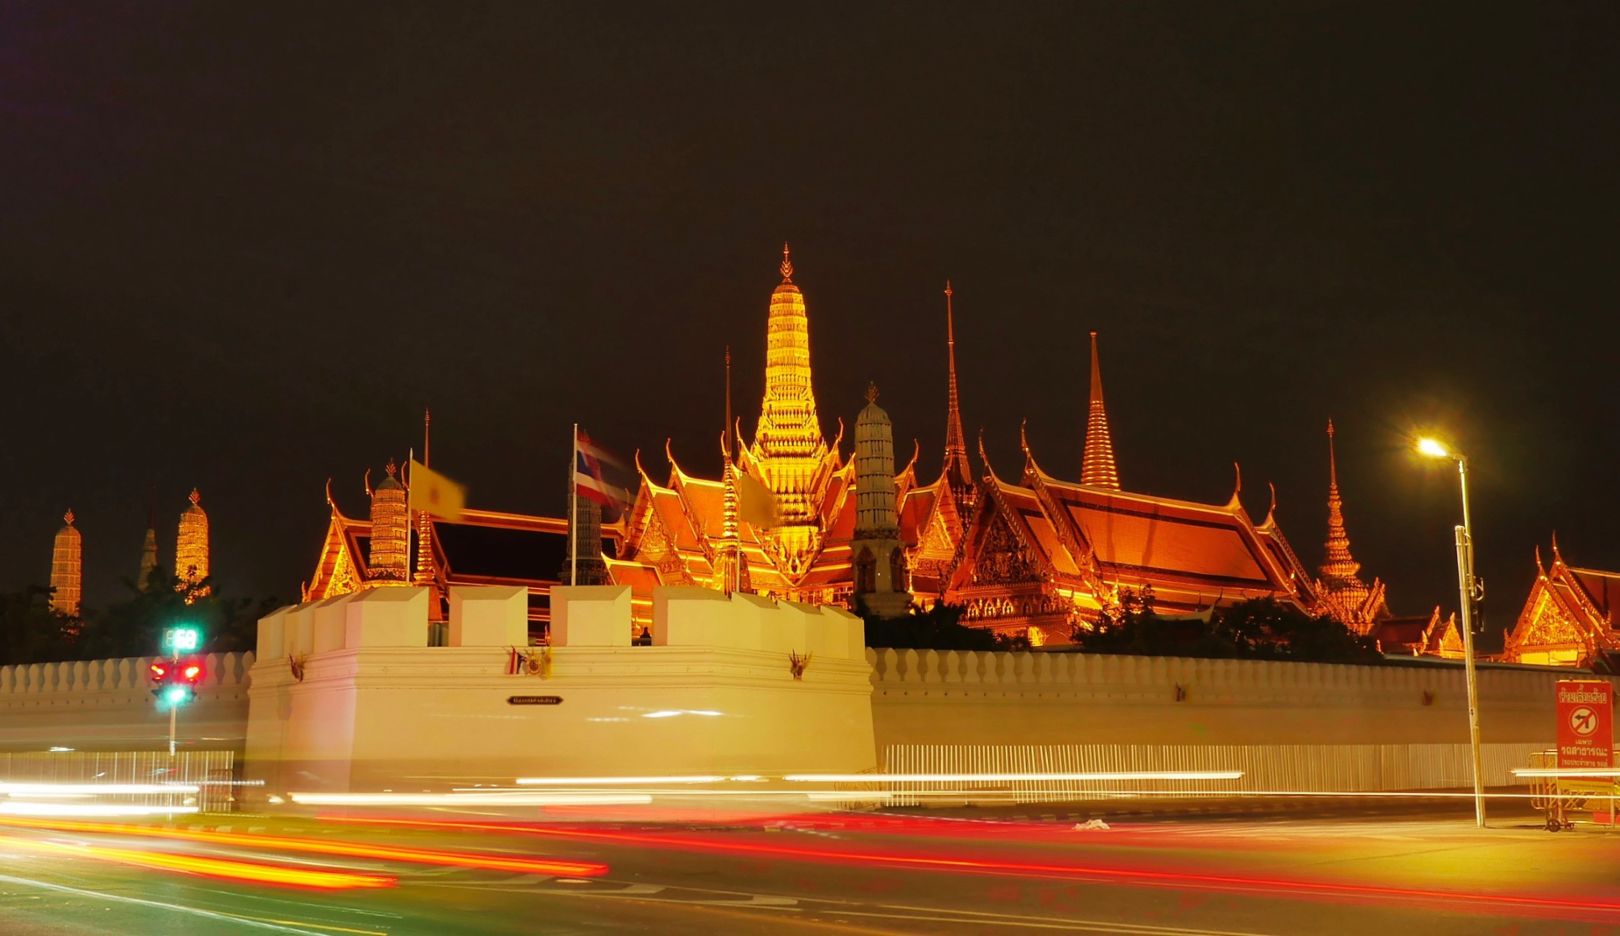 Wat Phra Kaeo, Königspalast und Tempel des Smaragd-Buddha: „Einer der eindrucksvollsten Orte Bangkoks. Um die Stimmung dieser magischen Fotolocation ideal einzufangen, kommt man am besten Sonntagabends: Die Anlage ist dann immer noch hell erleuchtet, aber der Verkehr deutlich milder. Das Resultat sind großartige Fotos – typisch Bangkok.“